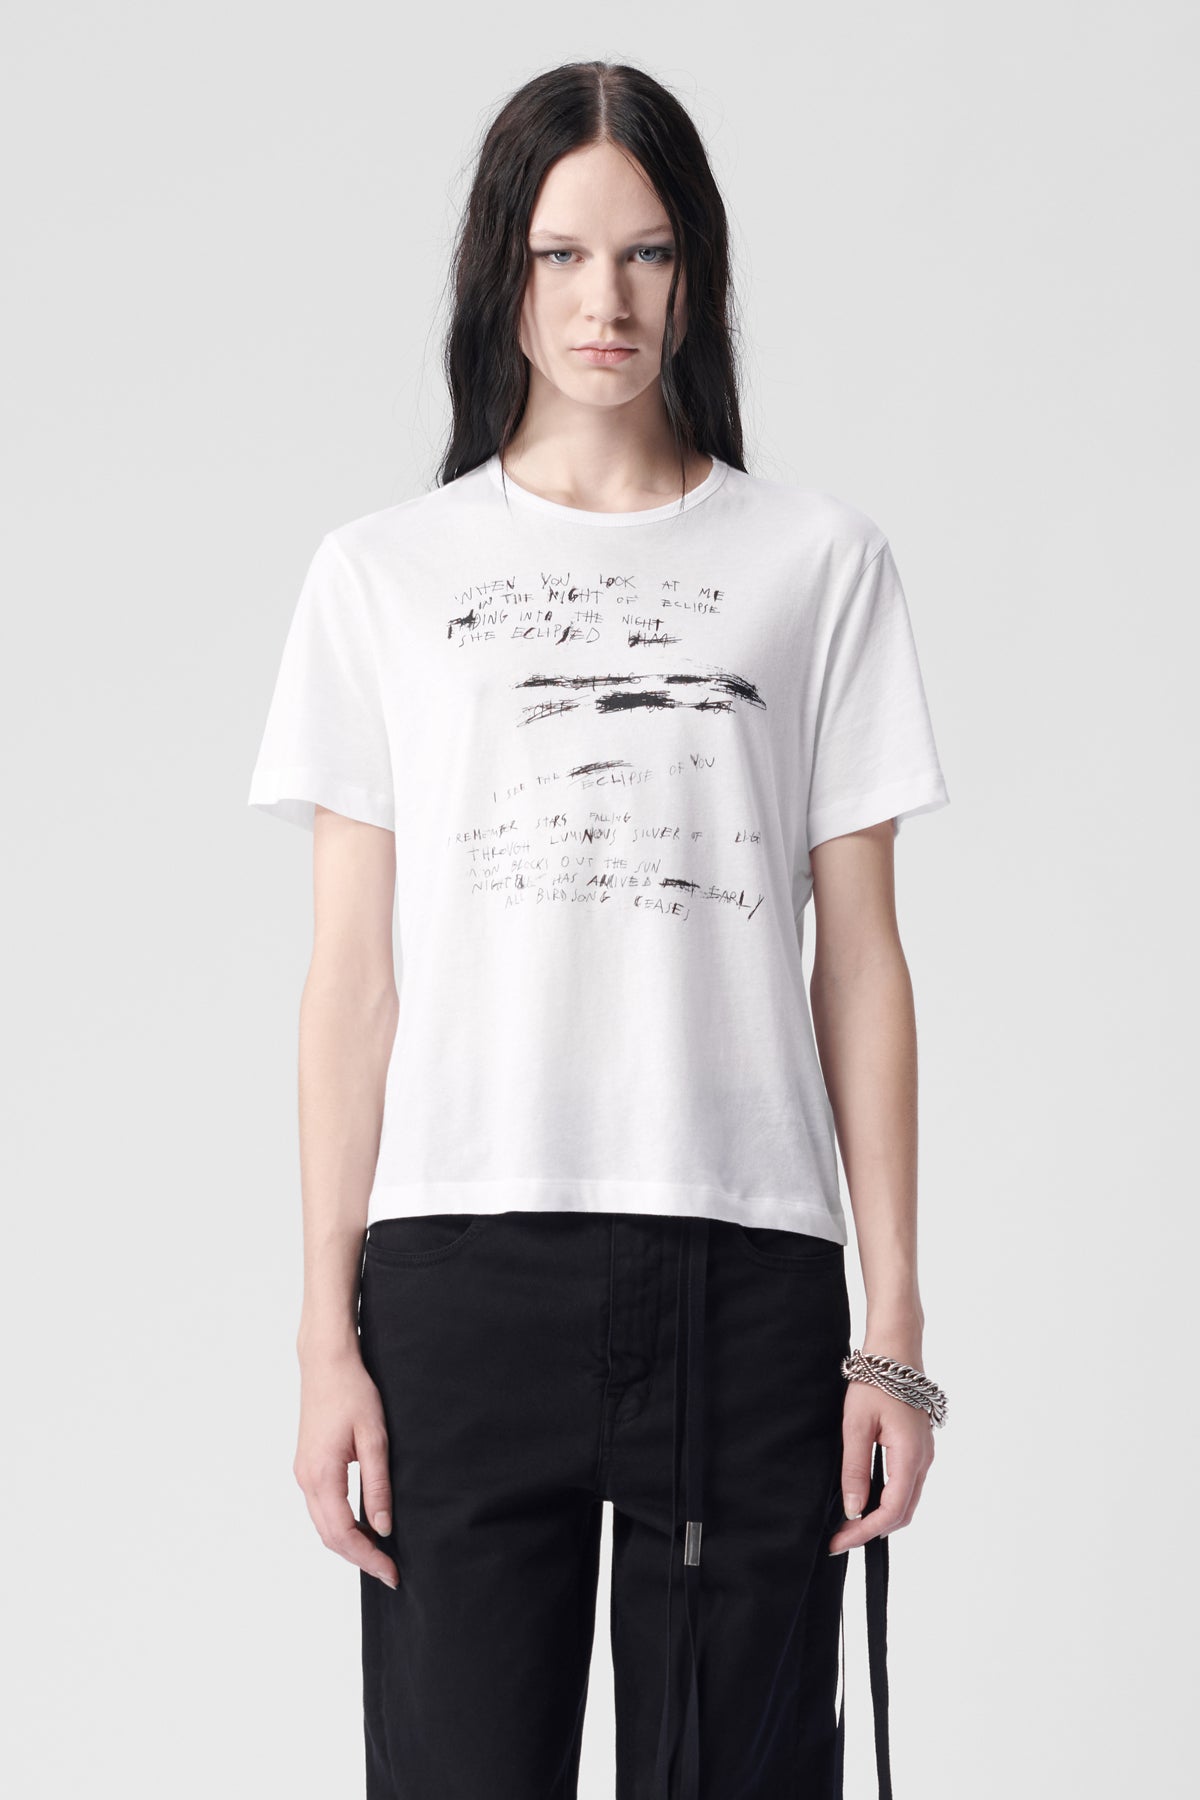 T-Shirts – Ann Demeulemeester